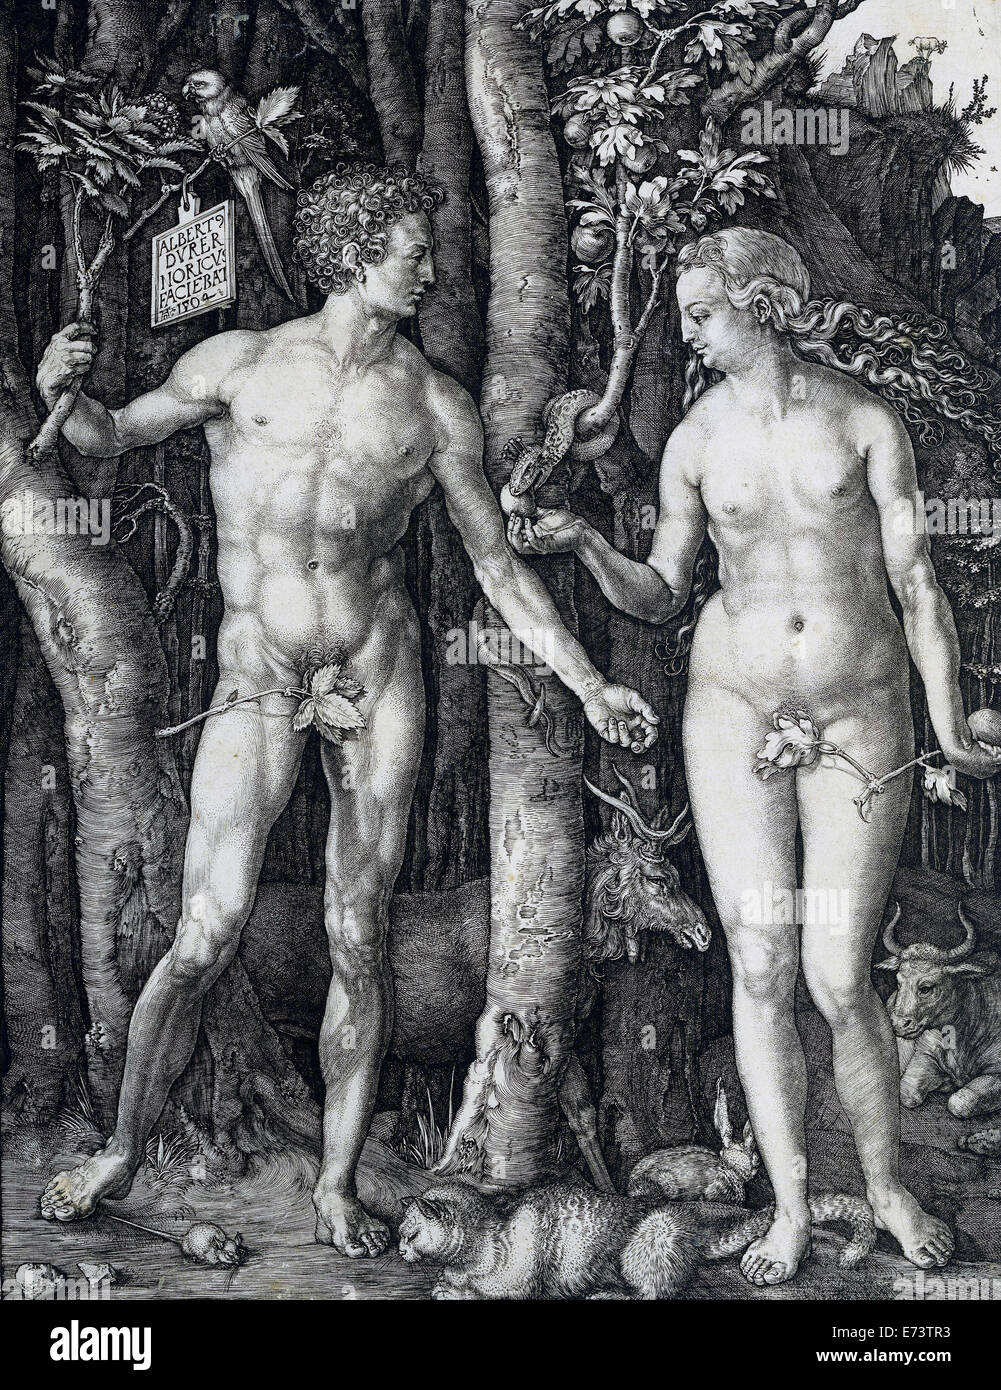 Adam and Eve - by Albrecht Dürer 1504 Stock Photo